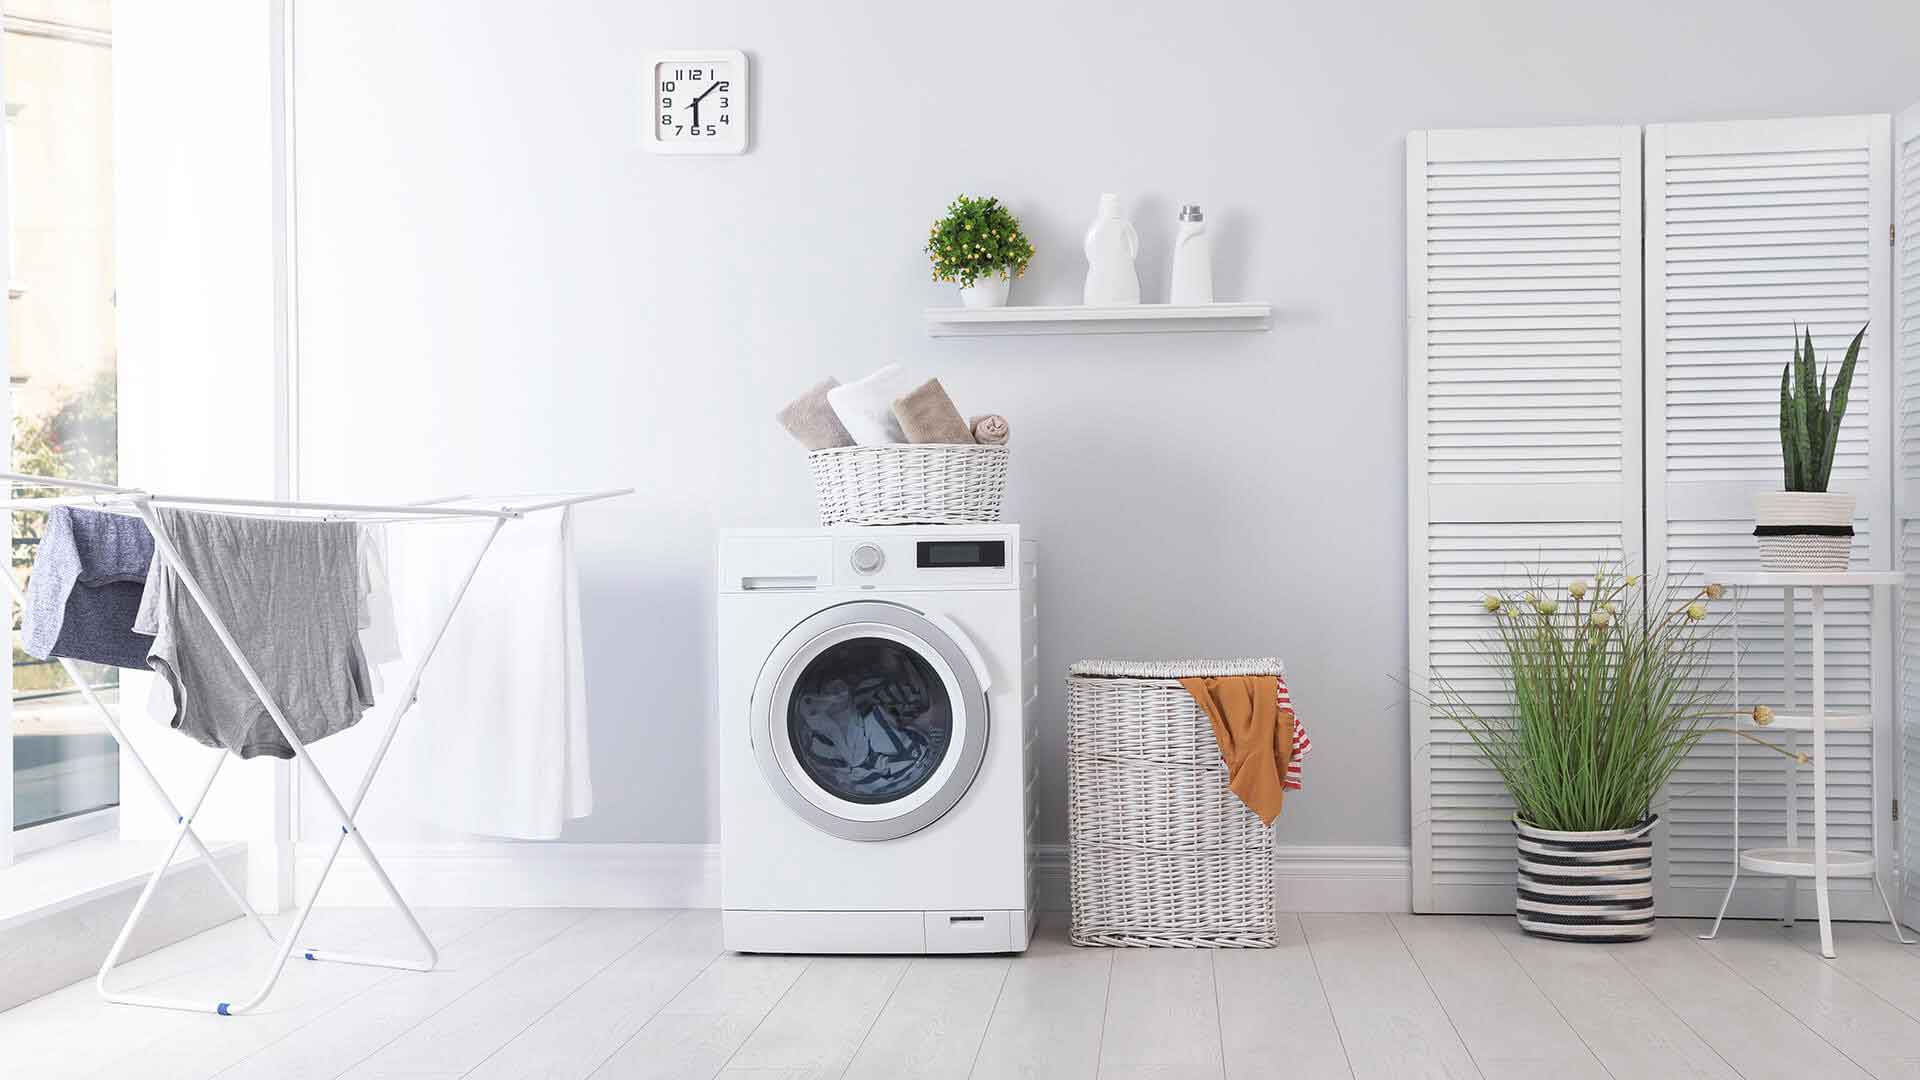 ارورها و کد های خطای متداول در ماشین لباسشویی بکو